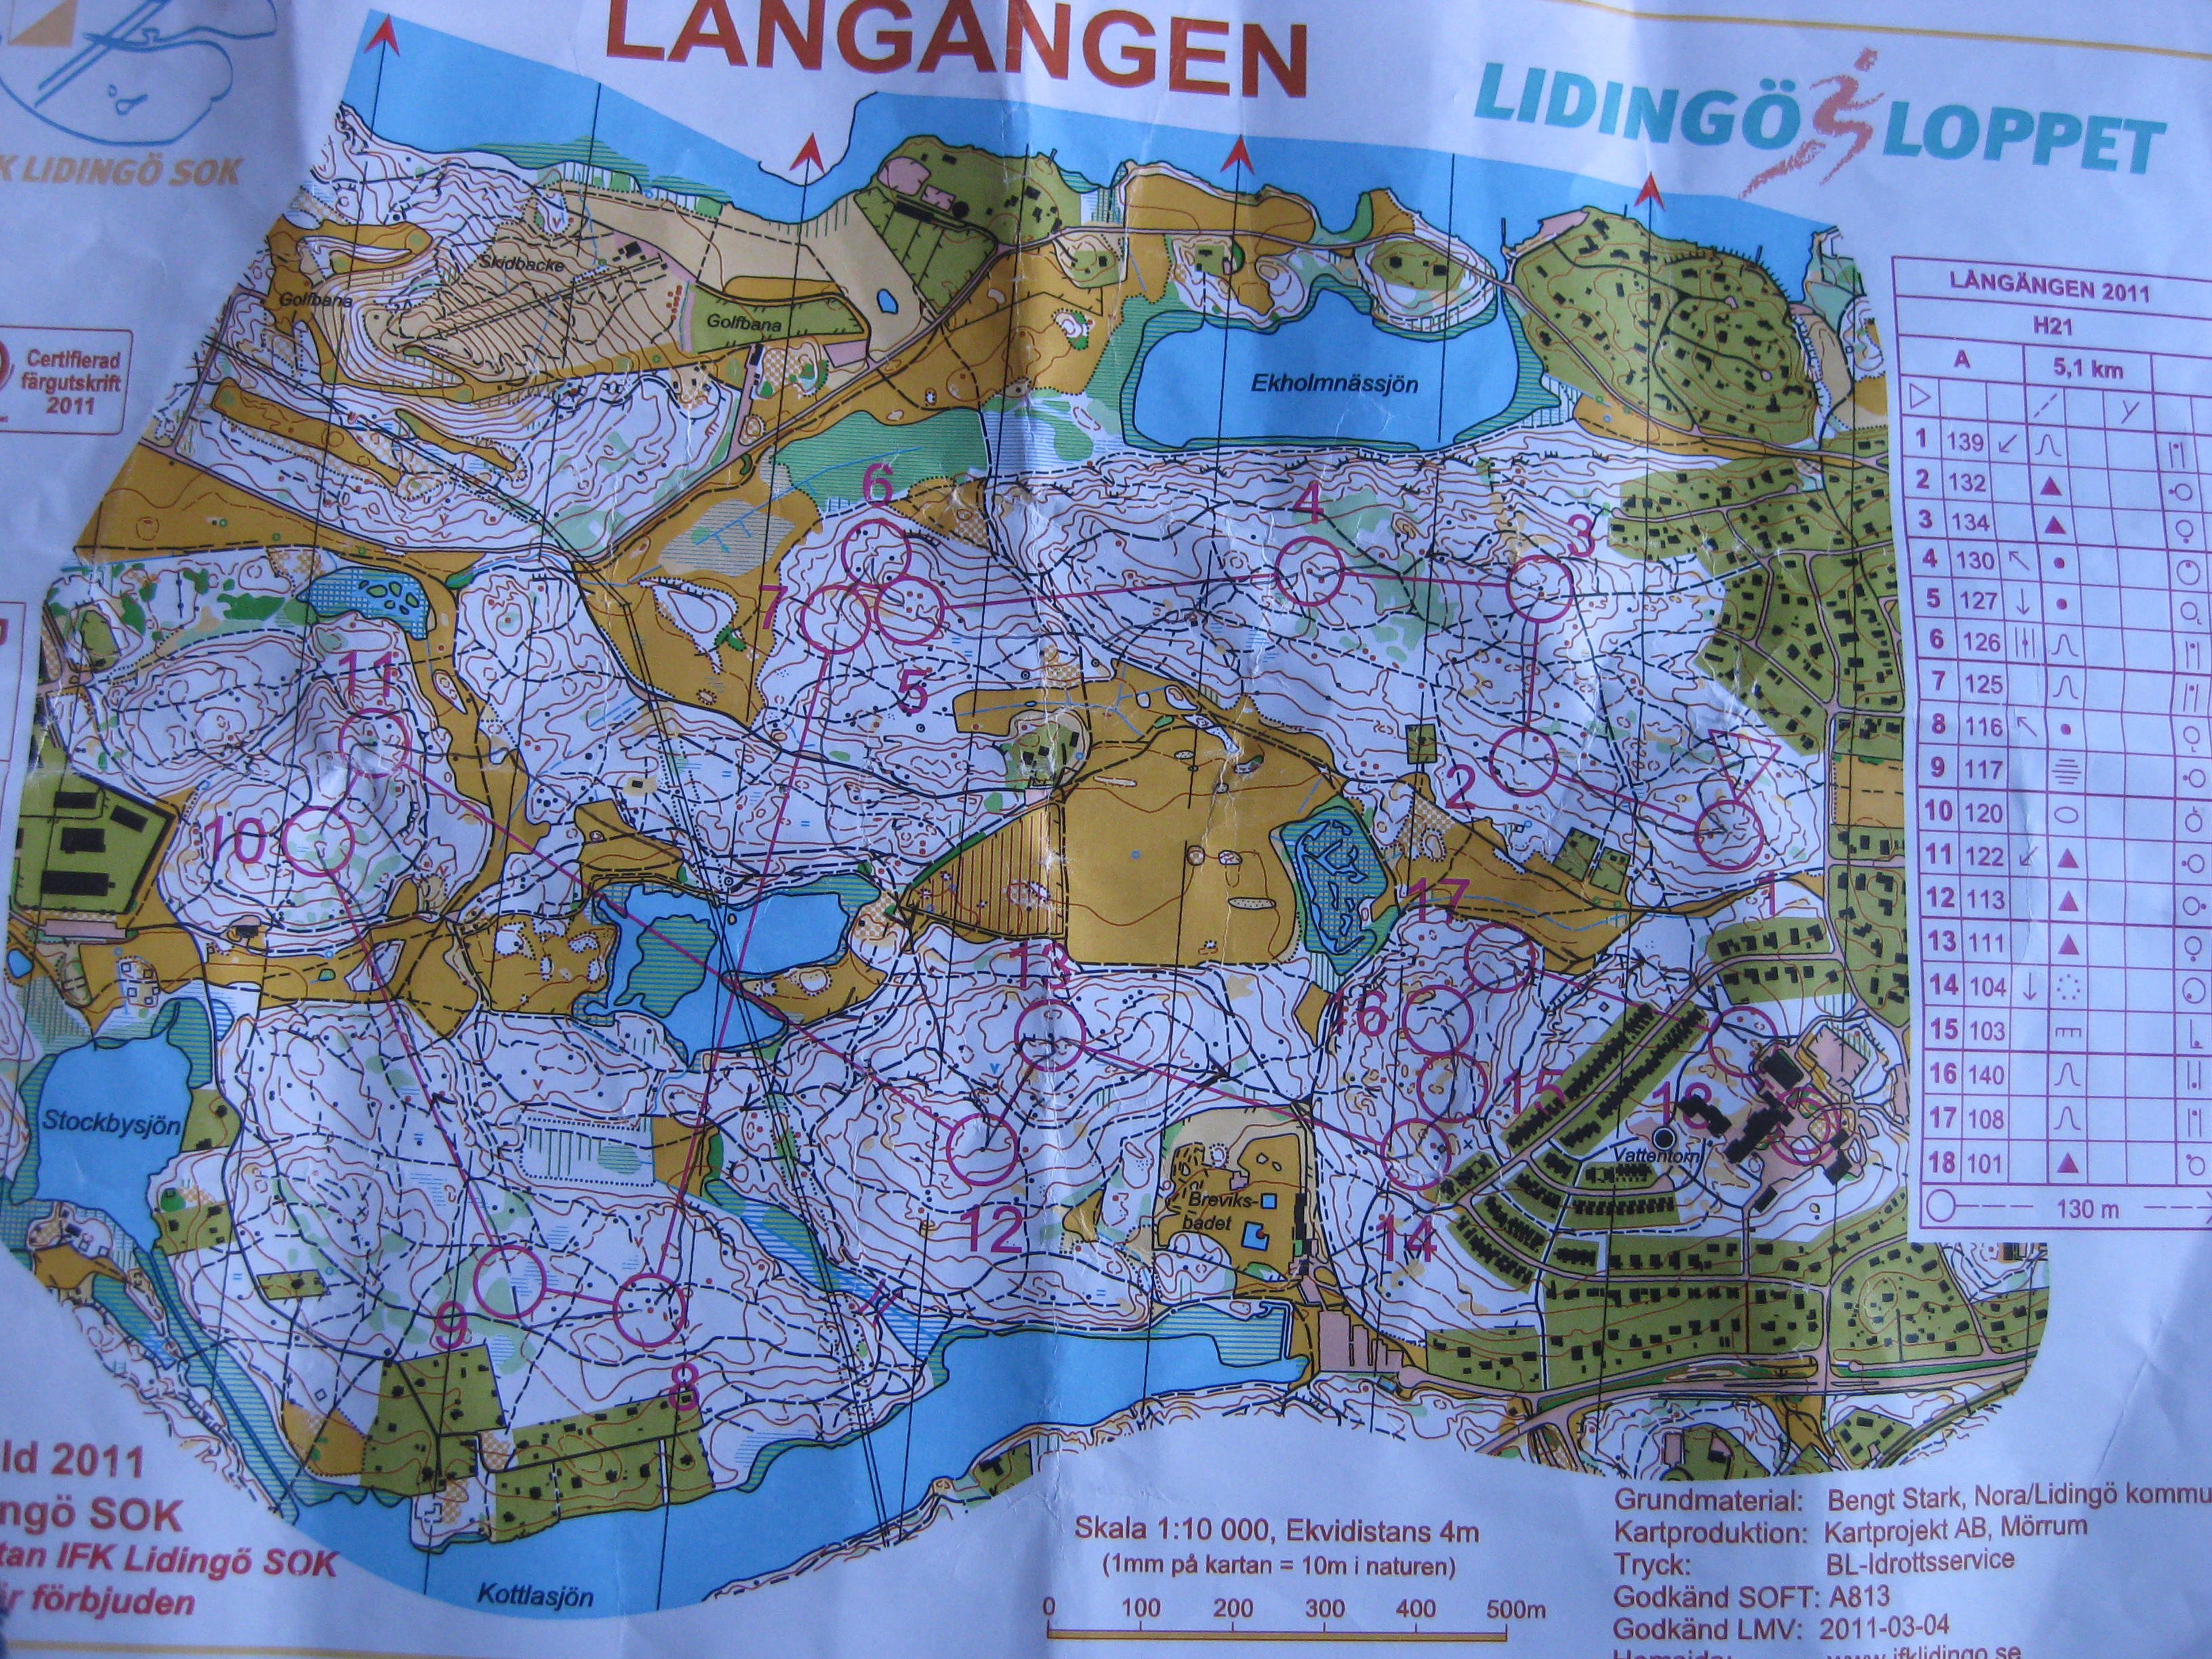 Lidingö (03-04-2011)